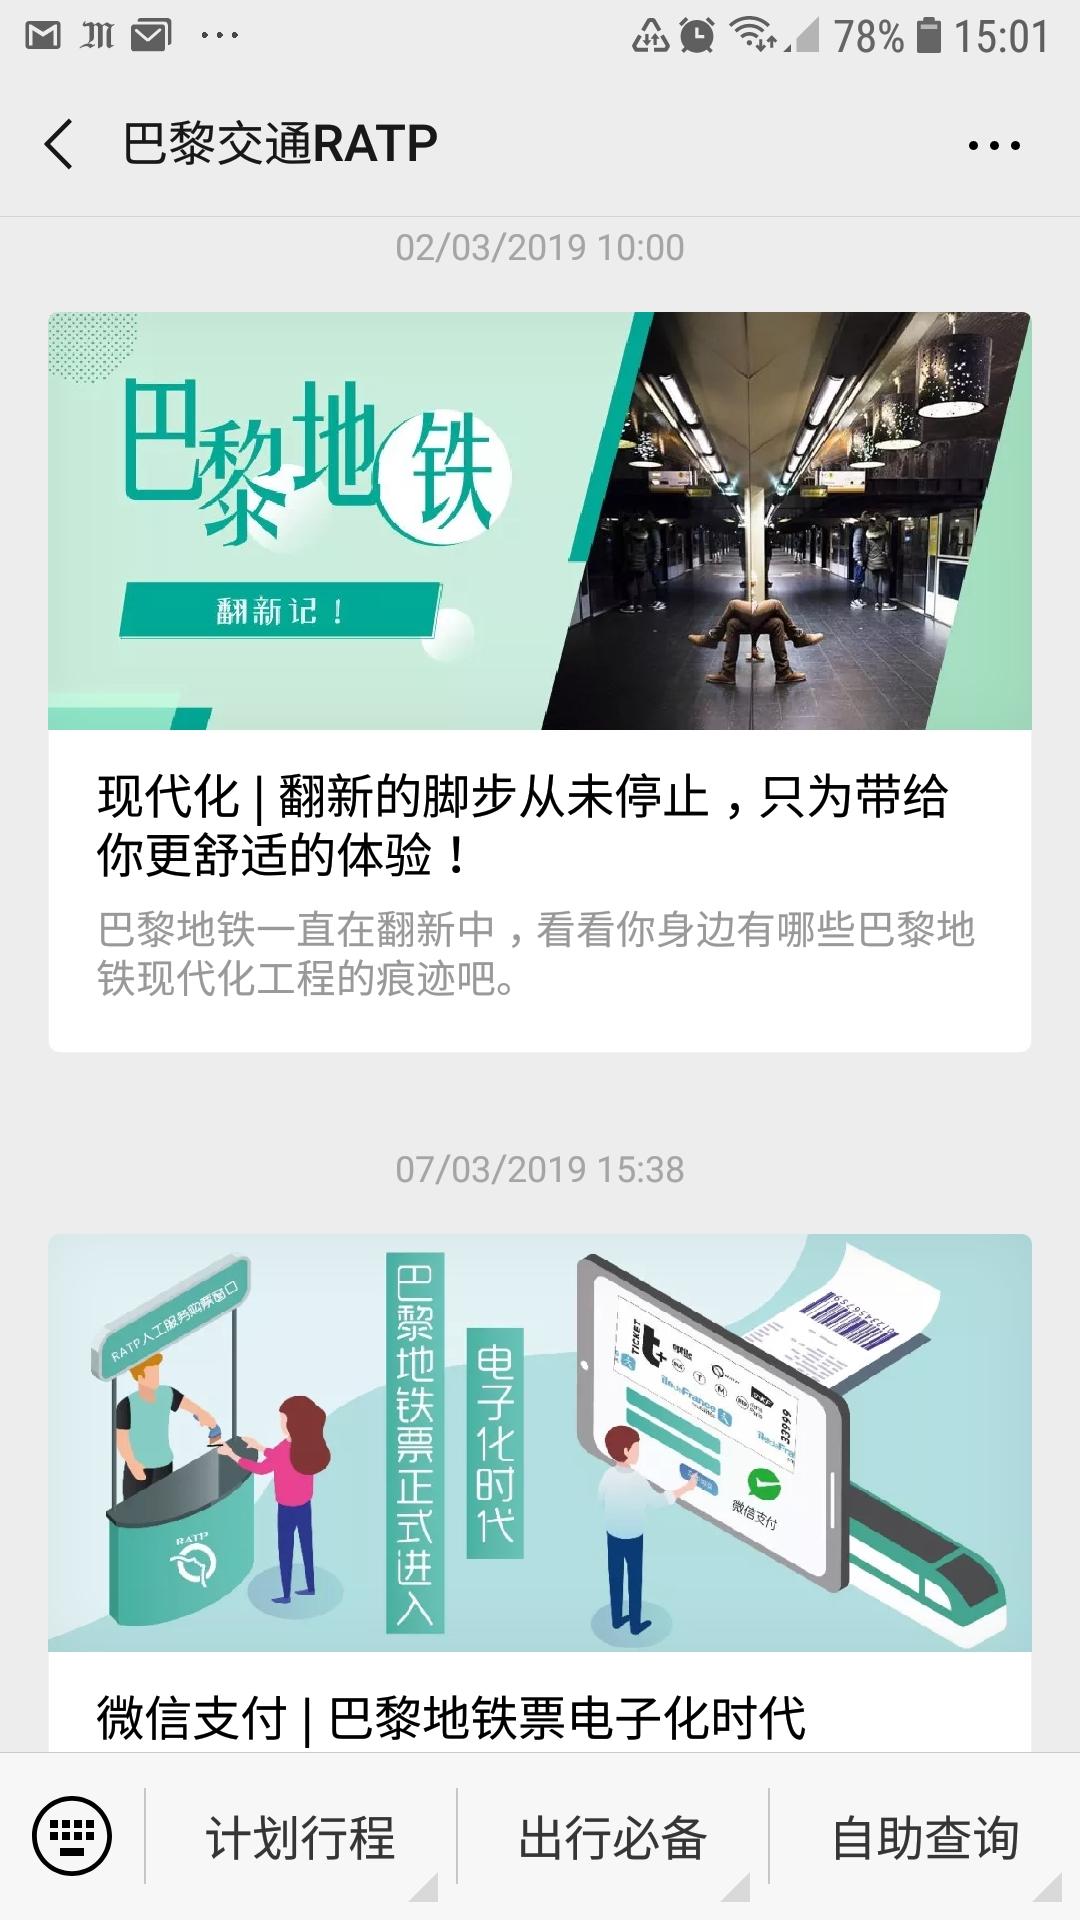 La RATP vend ses titres de transport sur WeChat